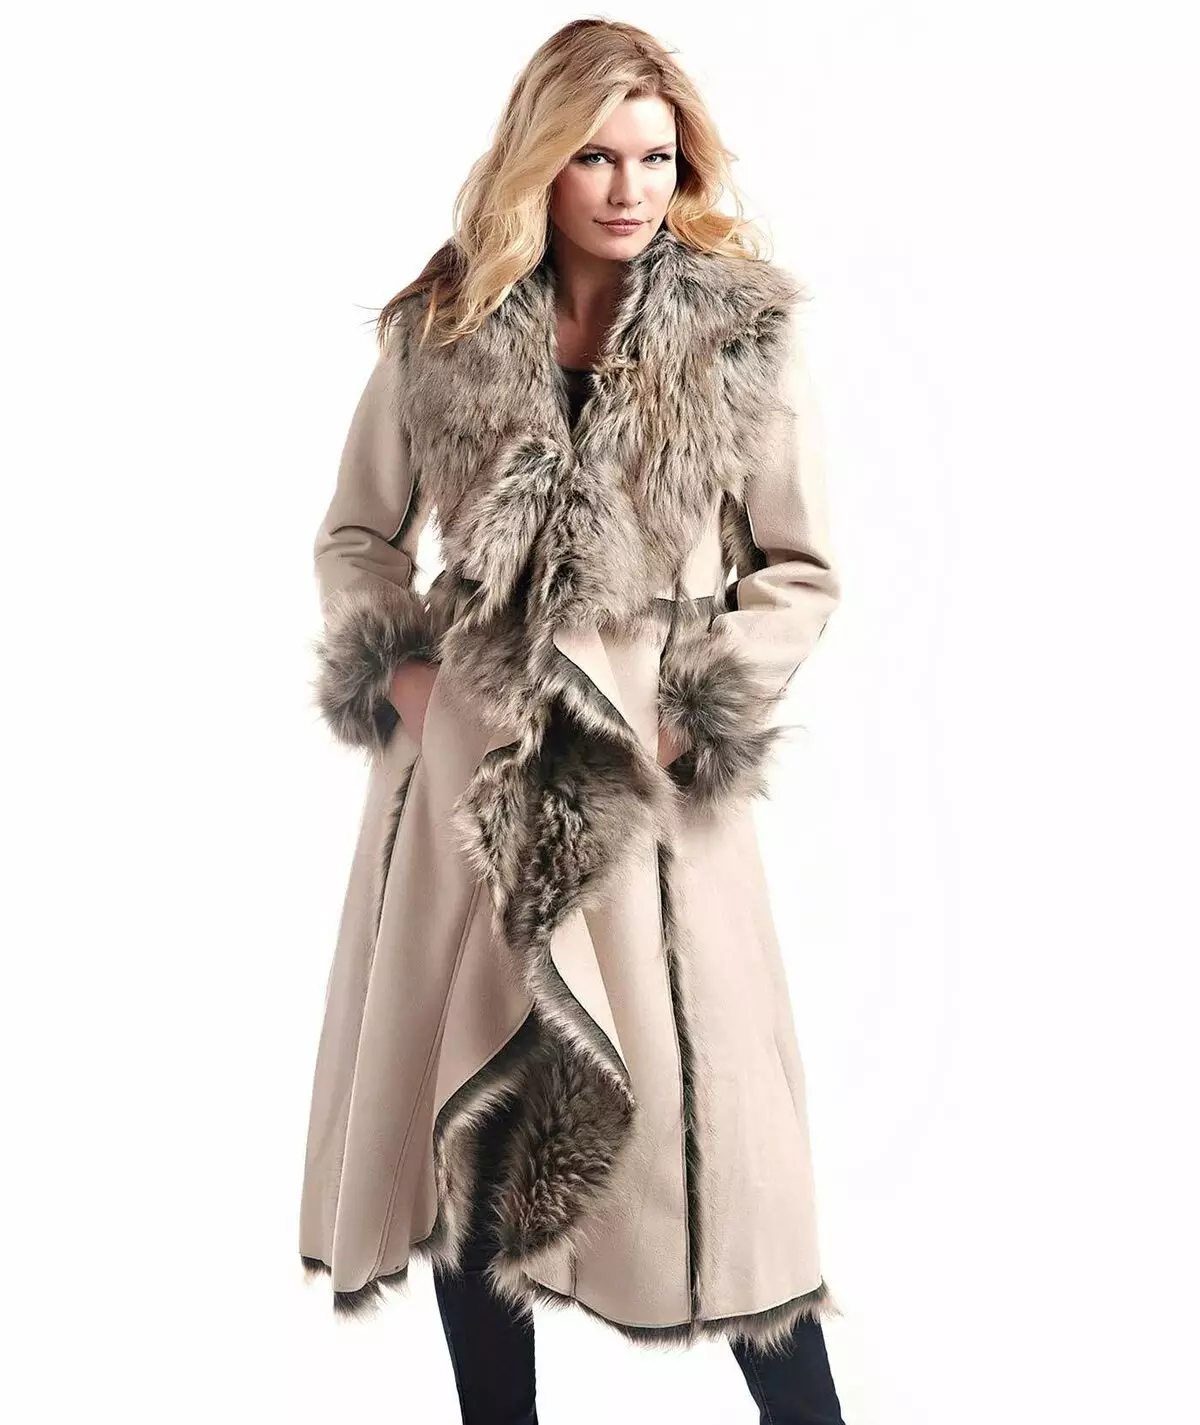 스웨이드 코트 (64 장의 사진) : 스웨이드 하에서 스판덱스에서 여성용 코트, 자연 스웨이드에서 레이저 가공, 청소 방법 568_43